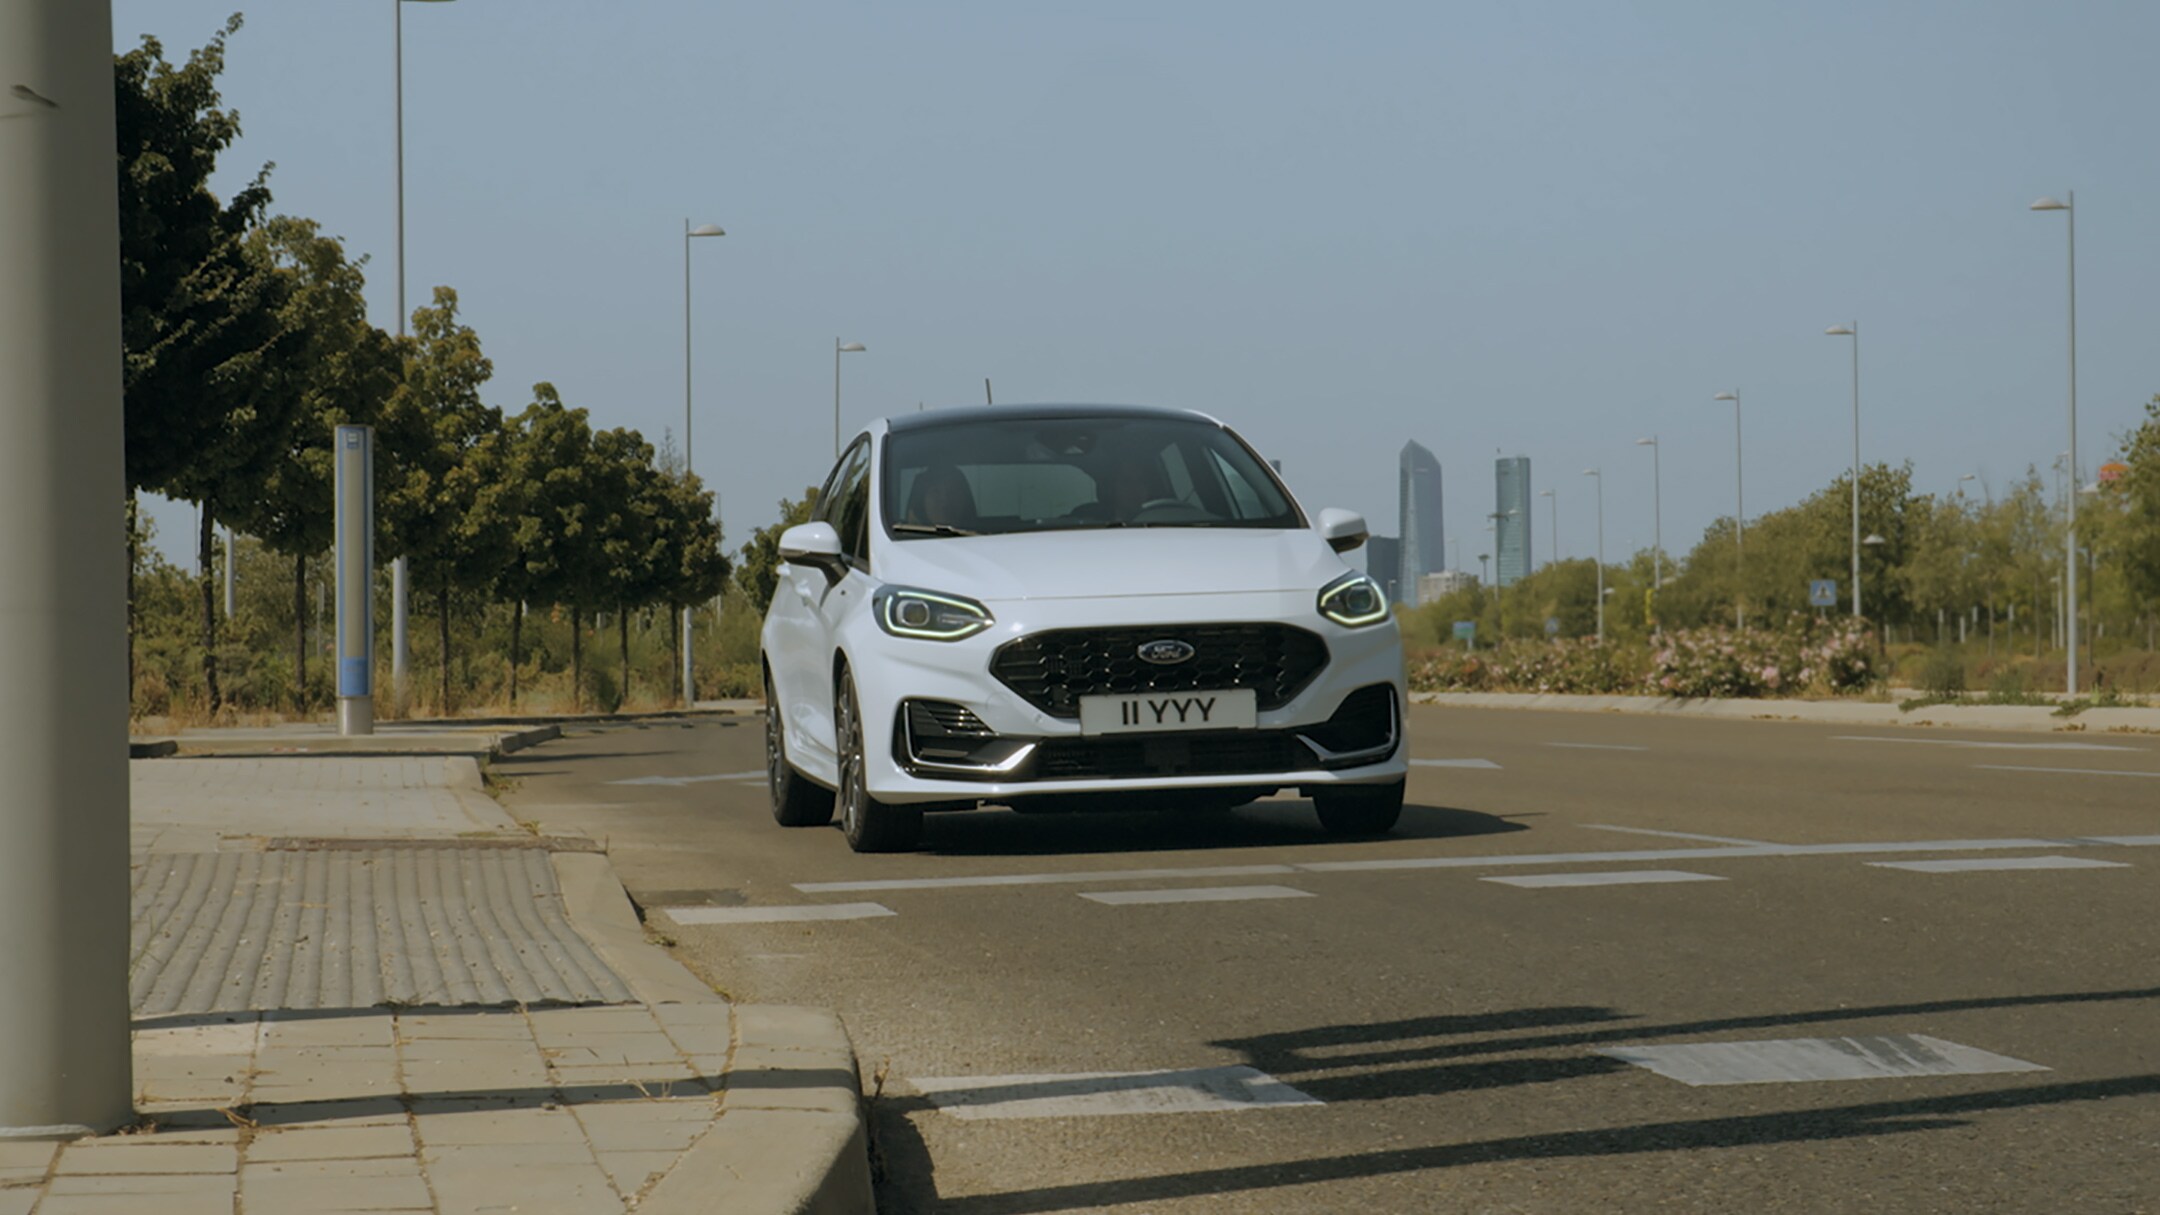 Ford Fiesta in Weiß. Frontansicht, stoppt auf einer Straße. Visualisierung Start-Stopp-System